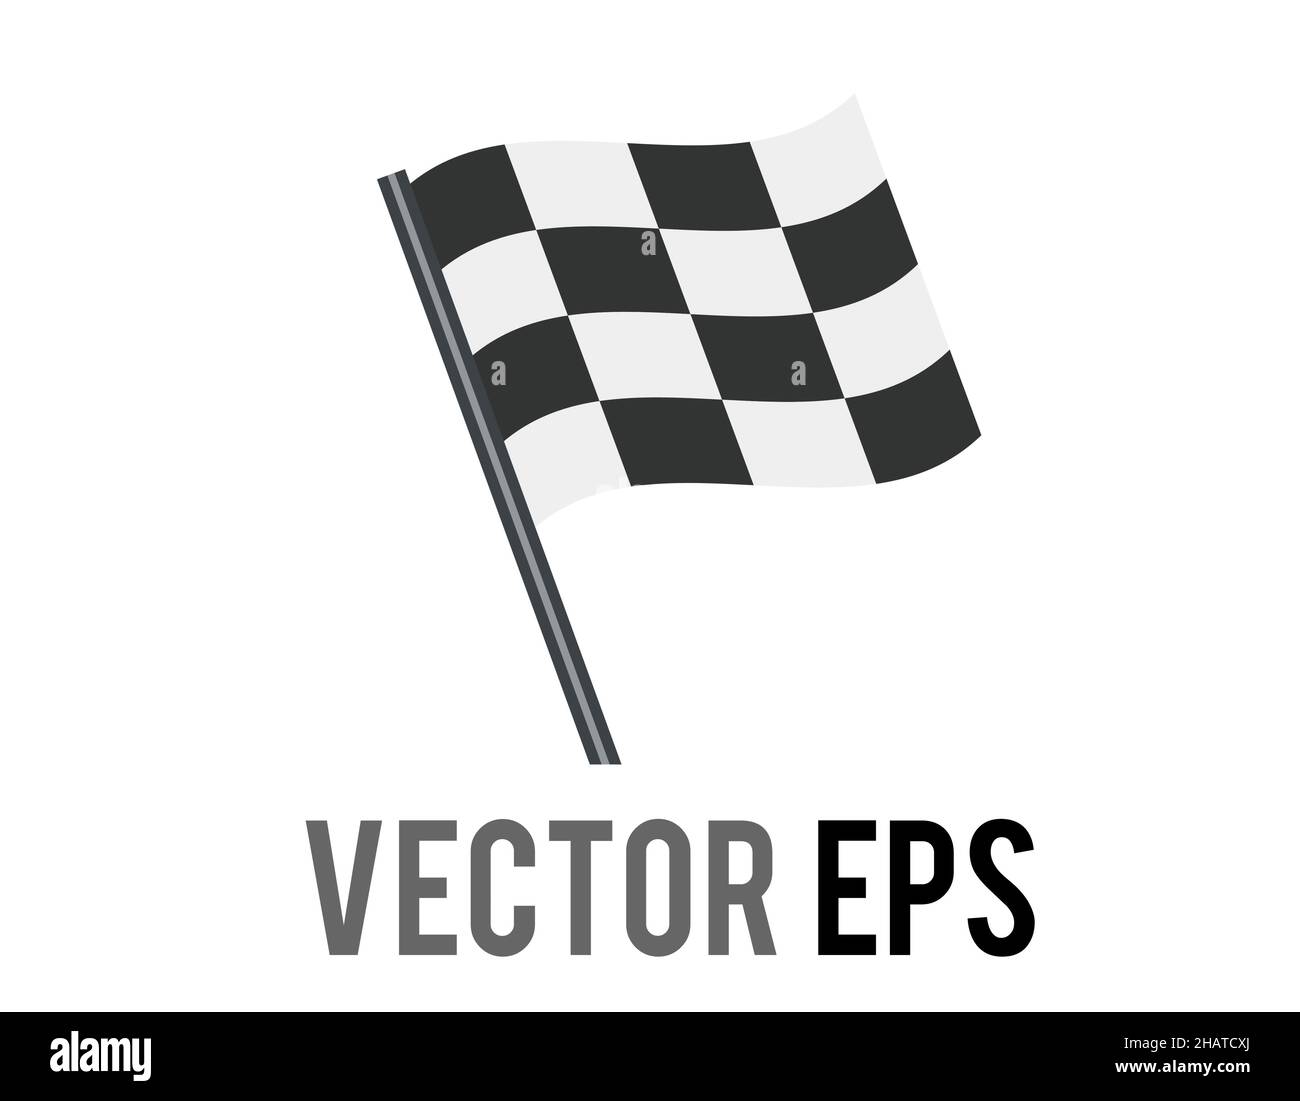 Die isolierte Vektor rechteckigen schwarzen und weißen Quadrate Schachbrettmuster Rennflagge Symbol, verwendet, um den Start oder das Ende der Autorennen Tour signalisieren Stock Vektor